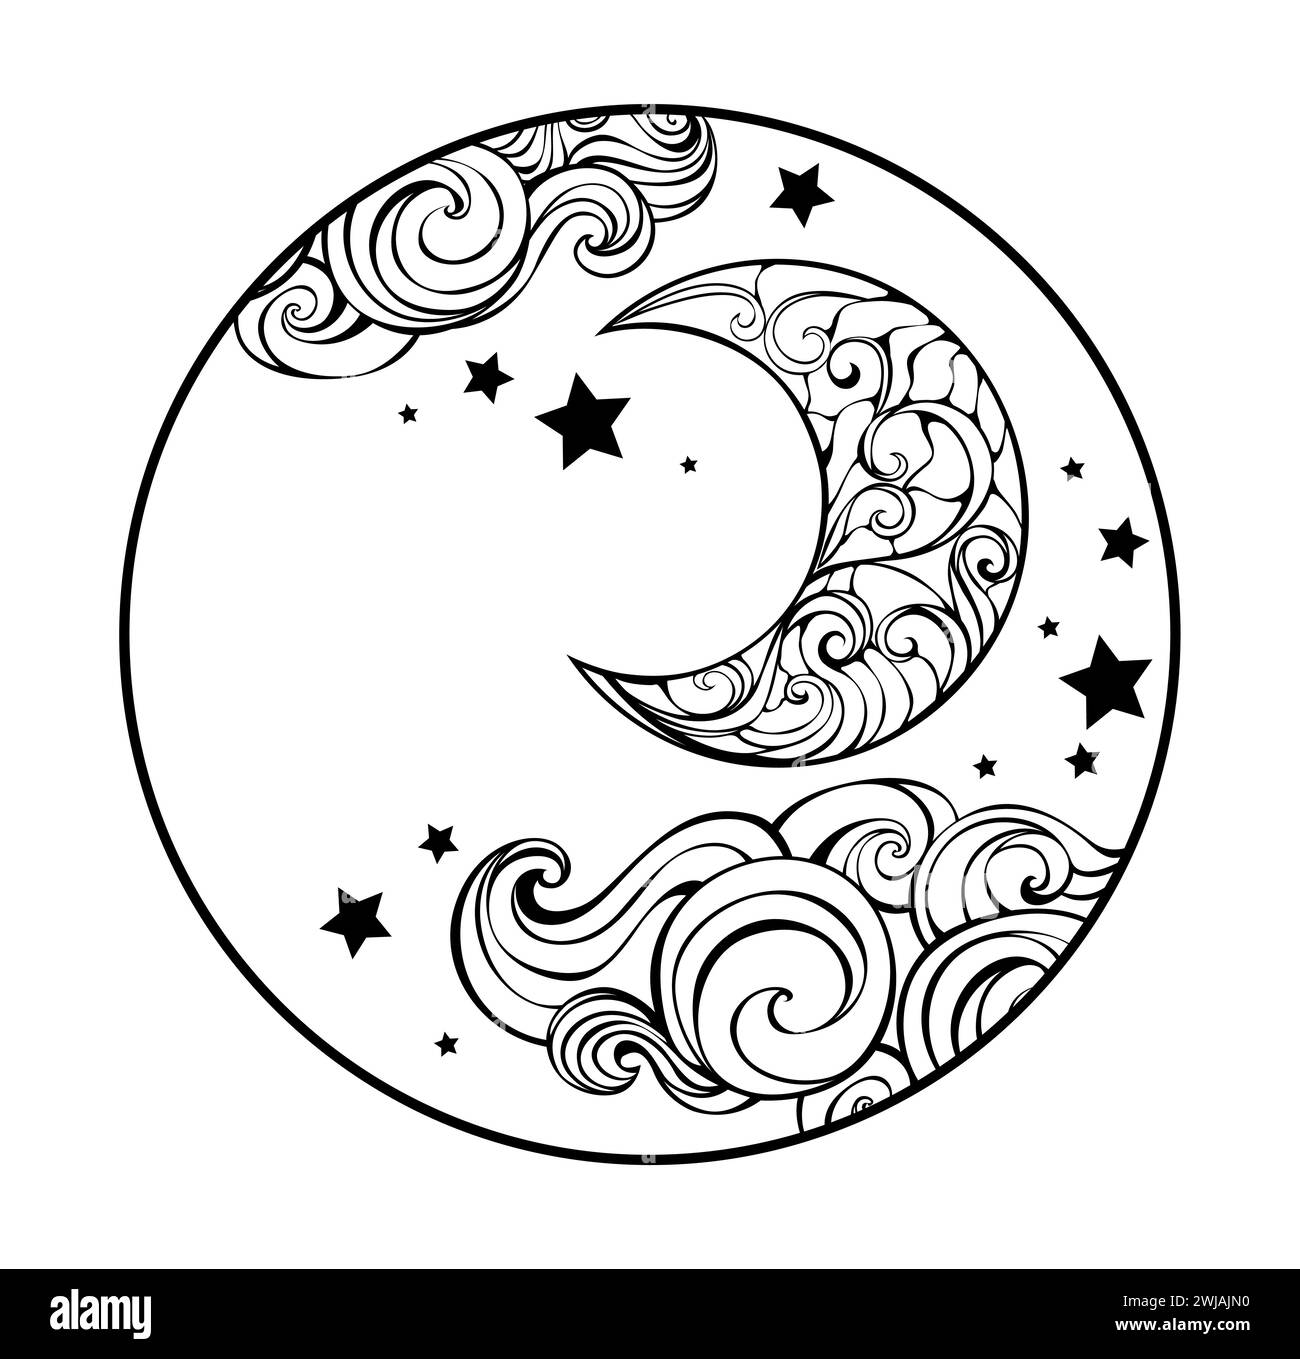 Rundes Monogramm mit einem künstlerisch gezeichneten Halbmond, Wolken und Sternen auf weißem Hintergrund. Gemusterter Halbmond. Stock Vektor